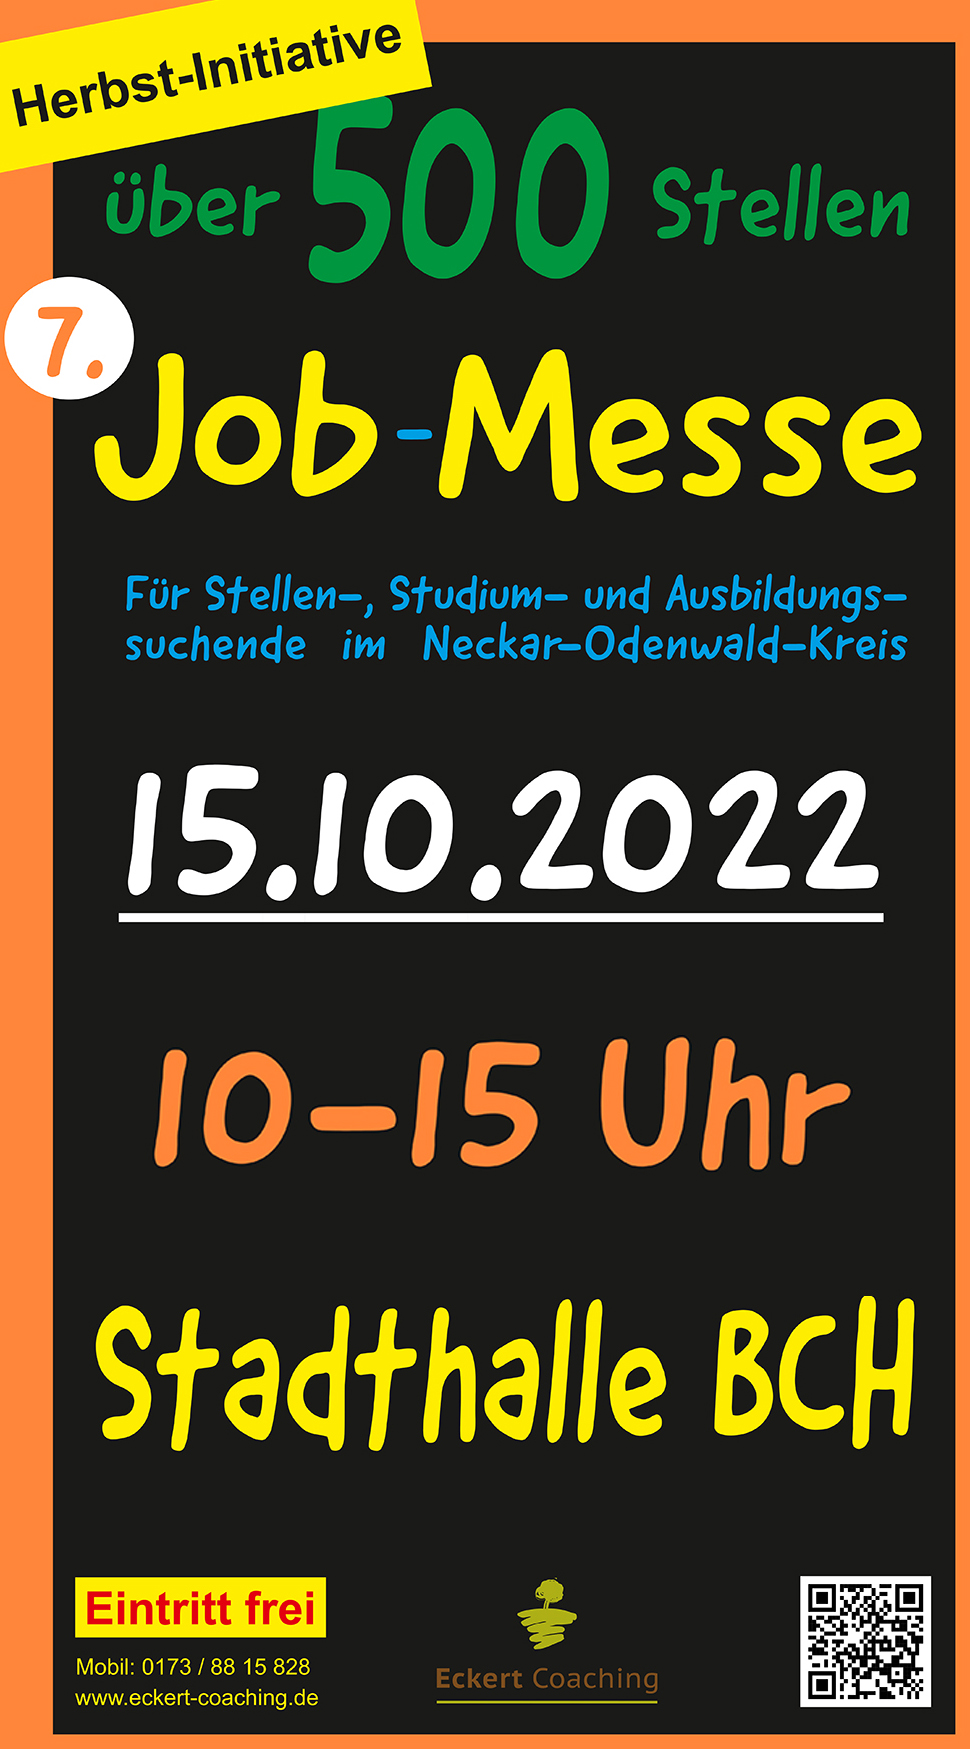 Jobmesse in Buchen, 15.10. ab 10 Uhr, Stadthalle Buchen